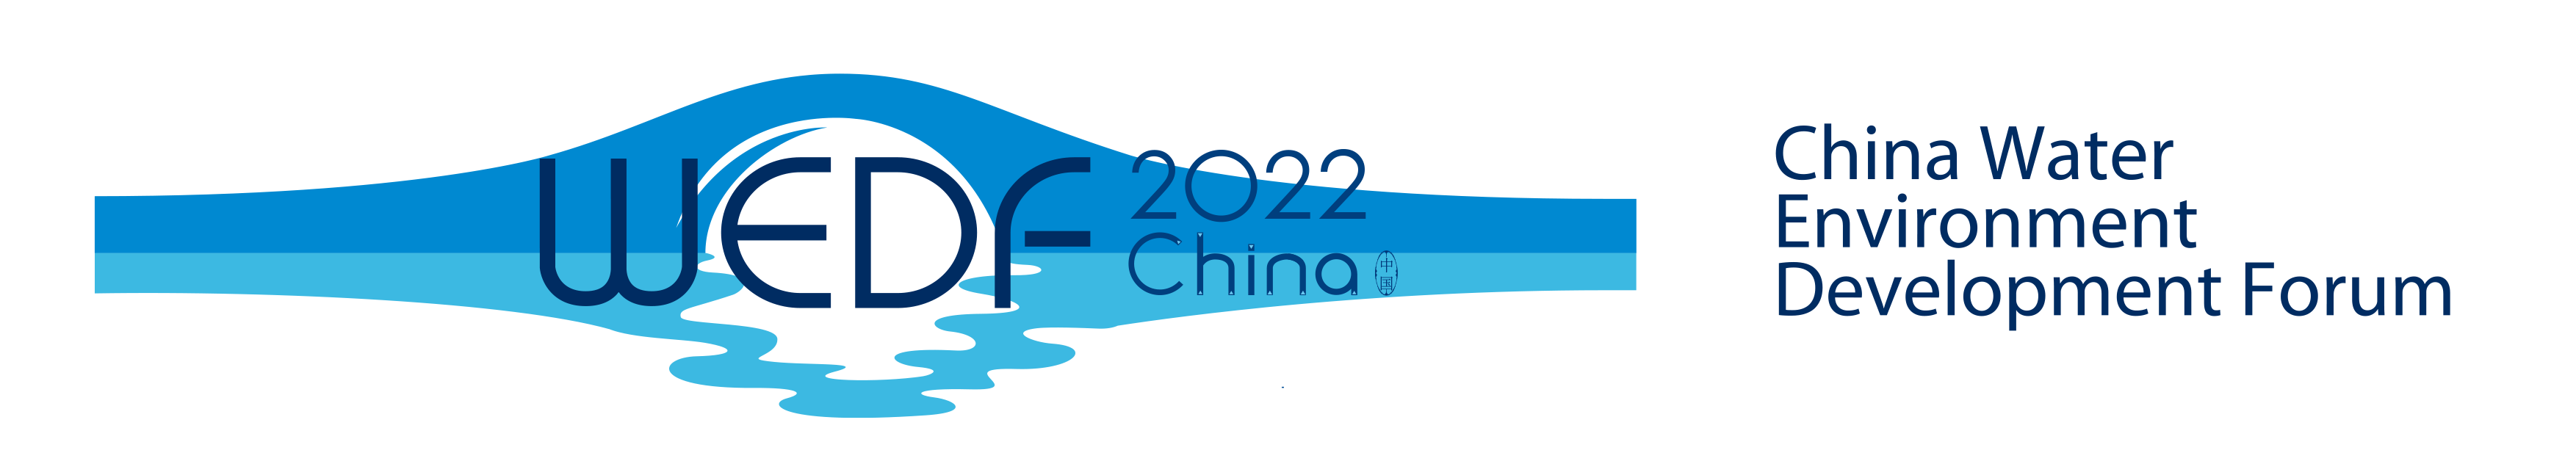 2022-logo.png